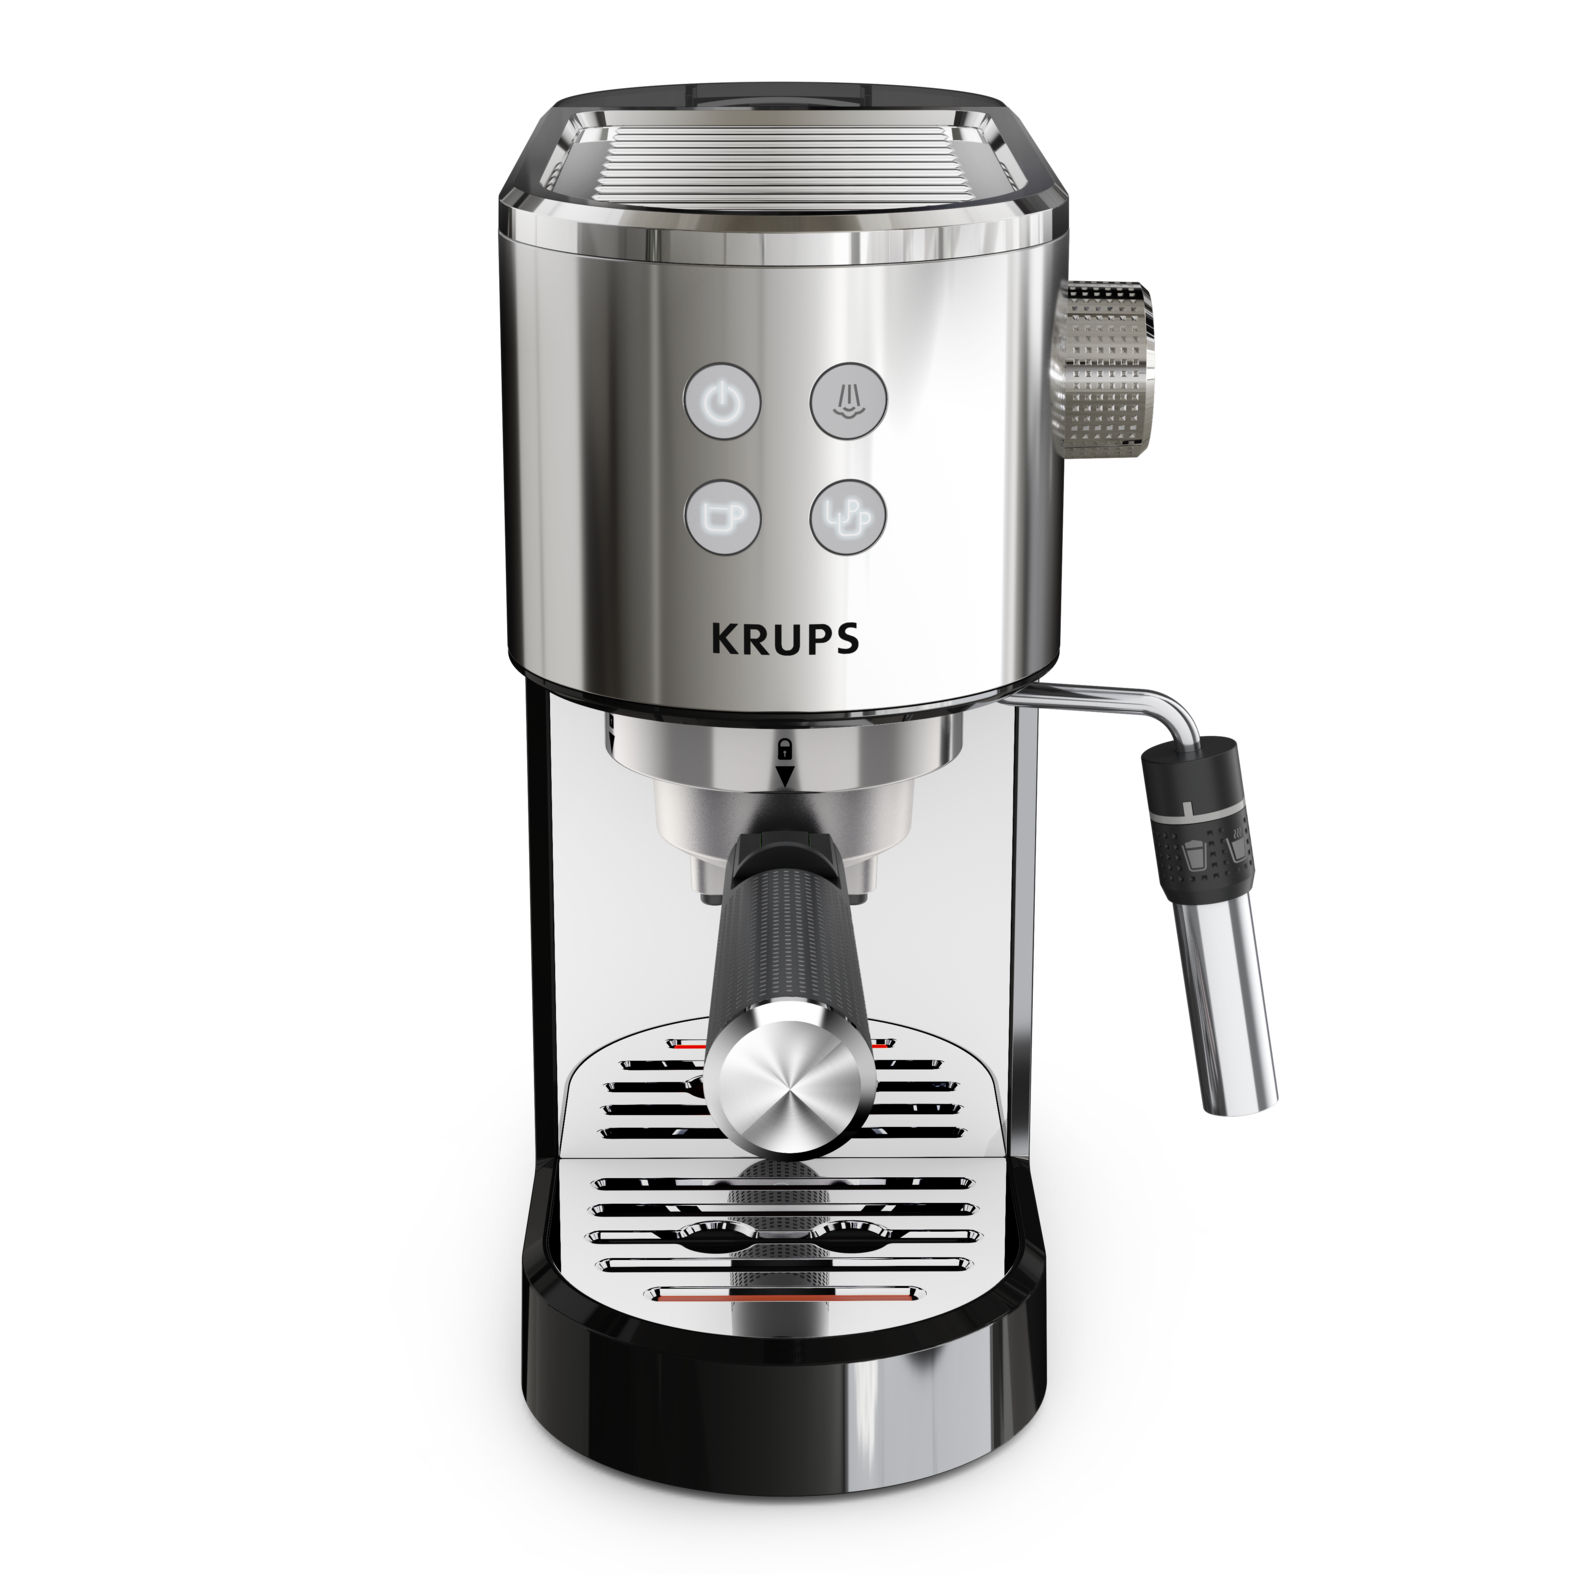 Рожковая кофеварка Virtuoso + XP444C10 рожковая кофеварка opio xp320830 с кофемолкой krups fast touch f2034232